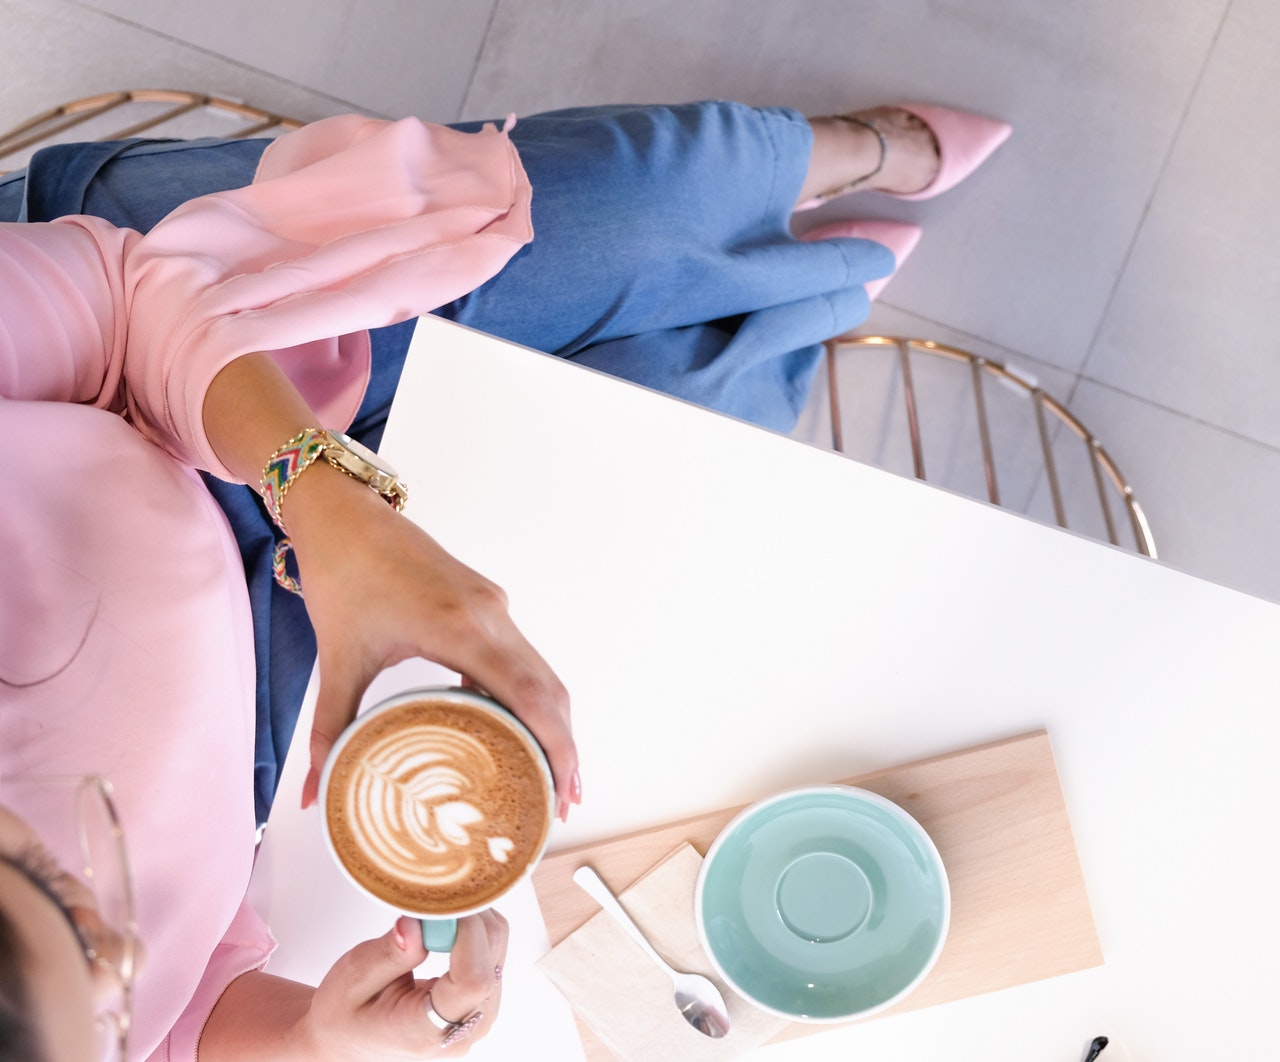 Mulher com roupas sociais tomando café.